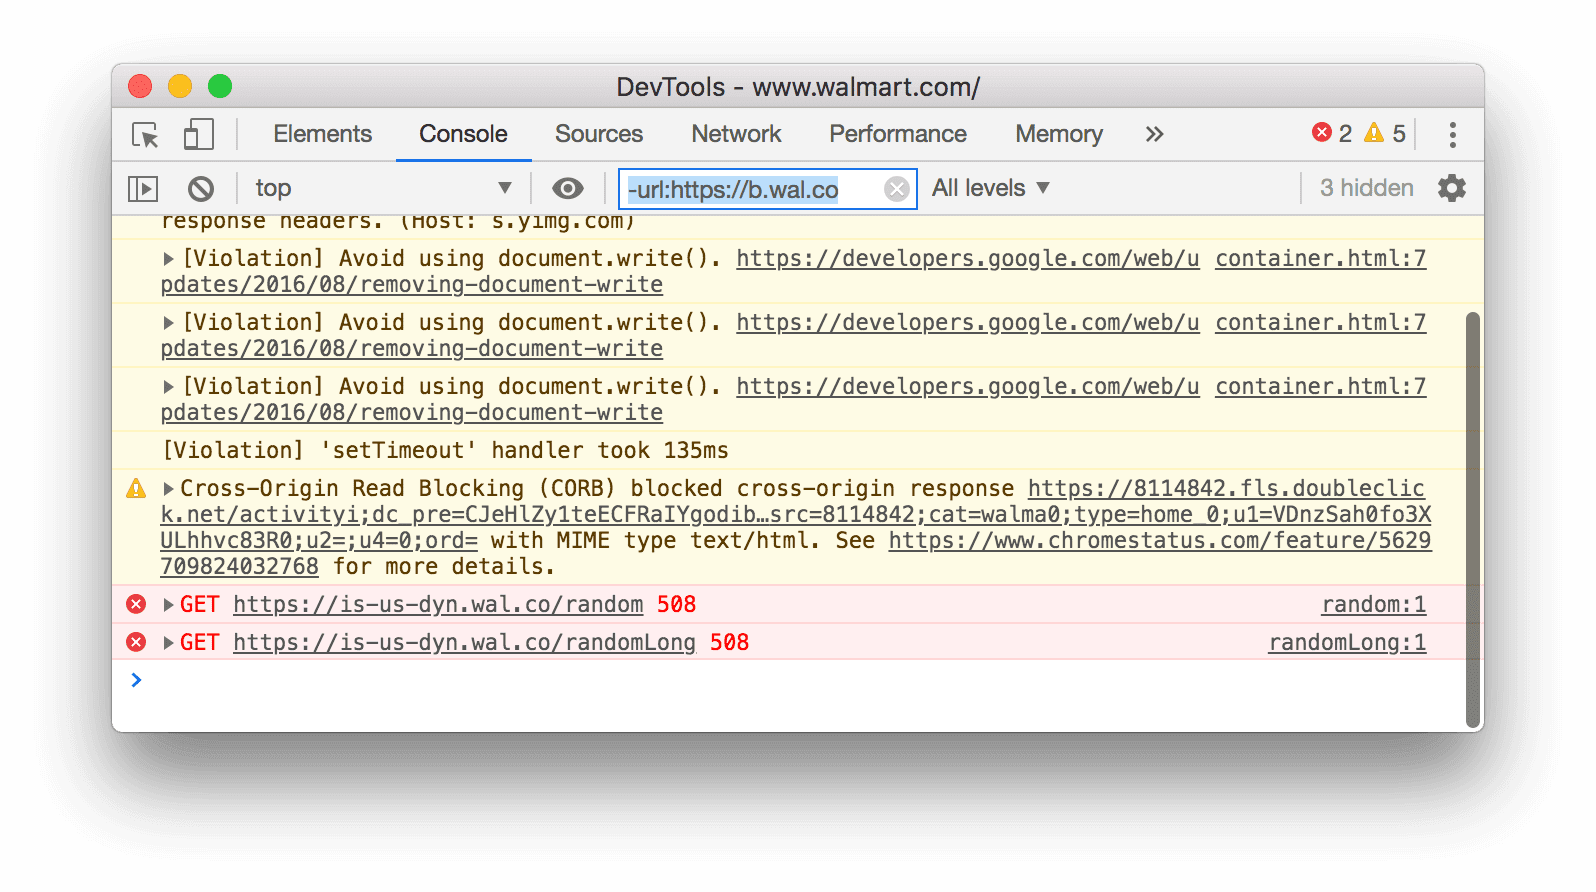 Фильтр отрицательных URL-адресов. DevTools скрывает все сообщения, соответствующие указанному URL-адресу.